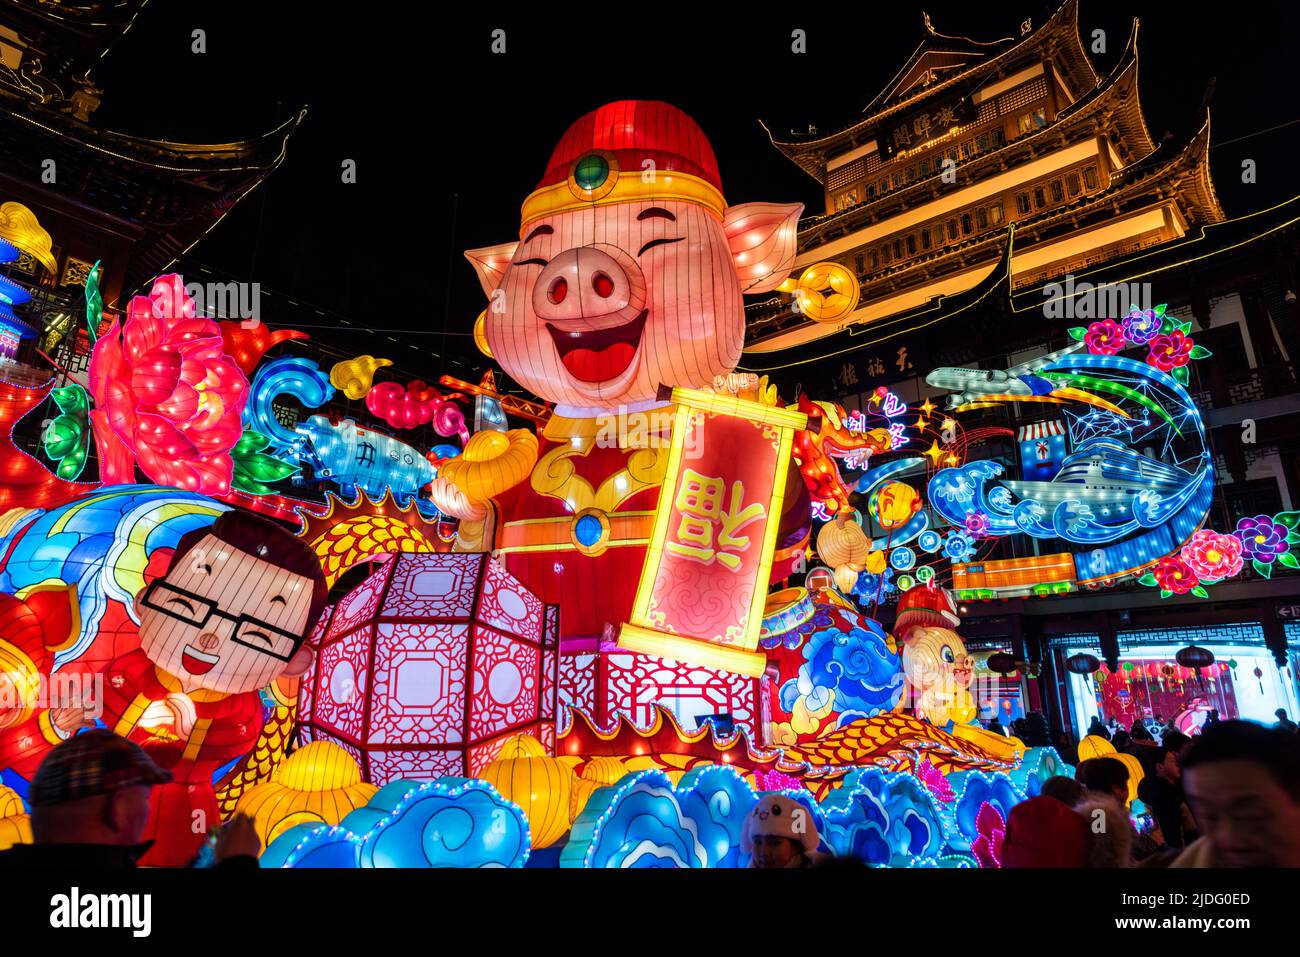 Les célèbres expositions illuminées à l'intérieur de Yu Yuan, jardin Yu, pendant le festival de lanternes de l'année du cochon. Banque D'Images